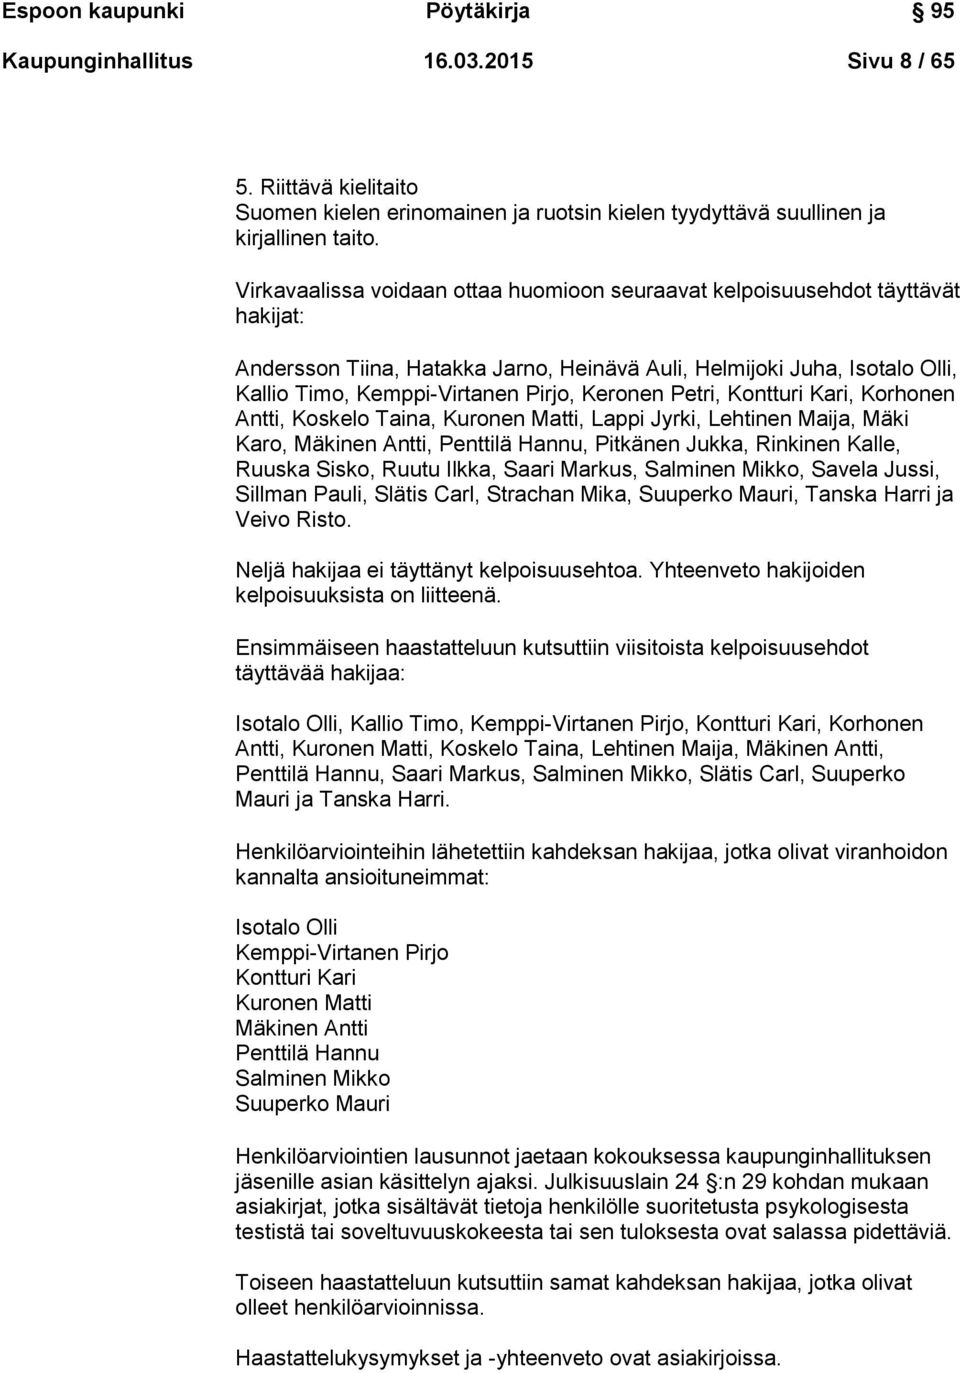 Keronen Petri, Kontturi Kari, Korhonen Antti, Koskelo Taina, Kuronen Matti, Lappi Jyrki, Lehtinen Maija, Mäki Karo, Mäkinen Antti, Penttilä Hannu, Pitkänen Jukka, Rinkinen Kalle, Ruuska Sisko, Ruutu